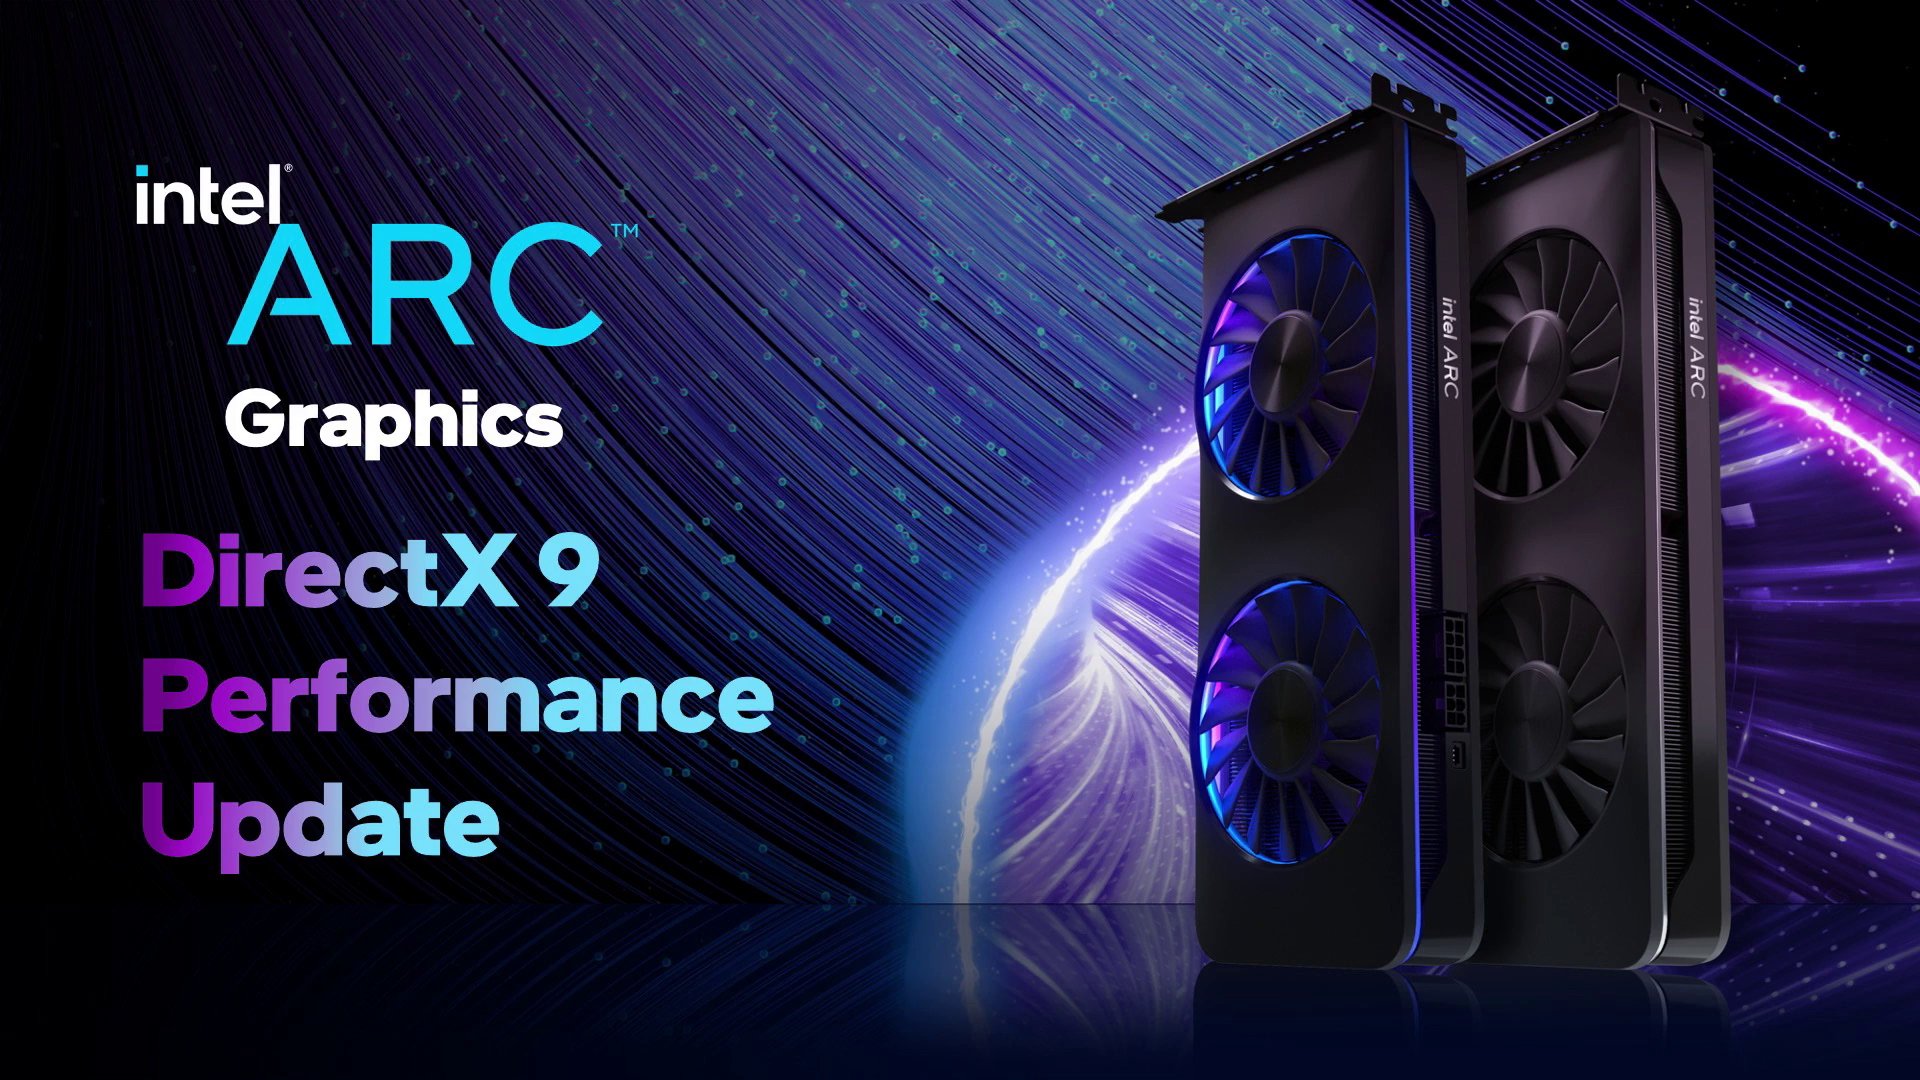 Phiên bản cập nhật Intel Arc 3959 cho phép nâng cao hiệu suất ở các tựa game sử dụng DirectX 9